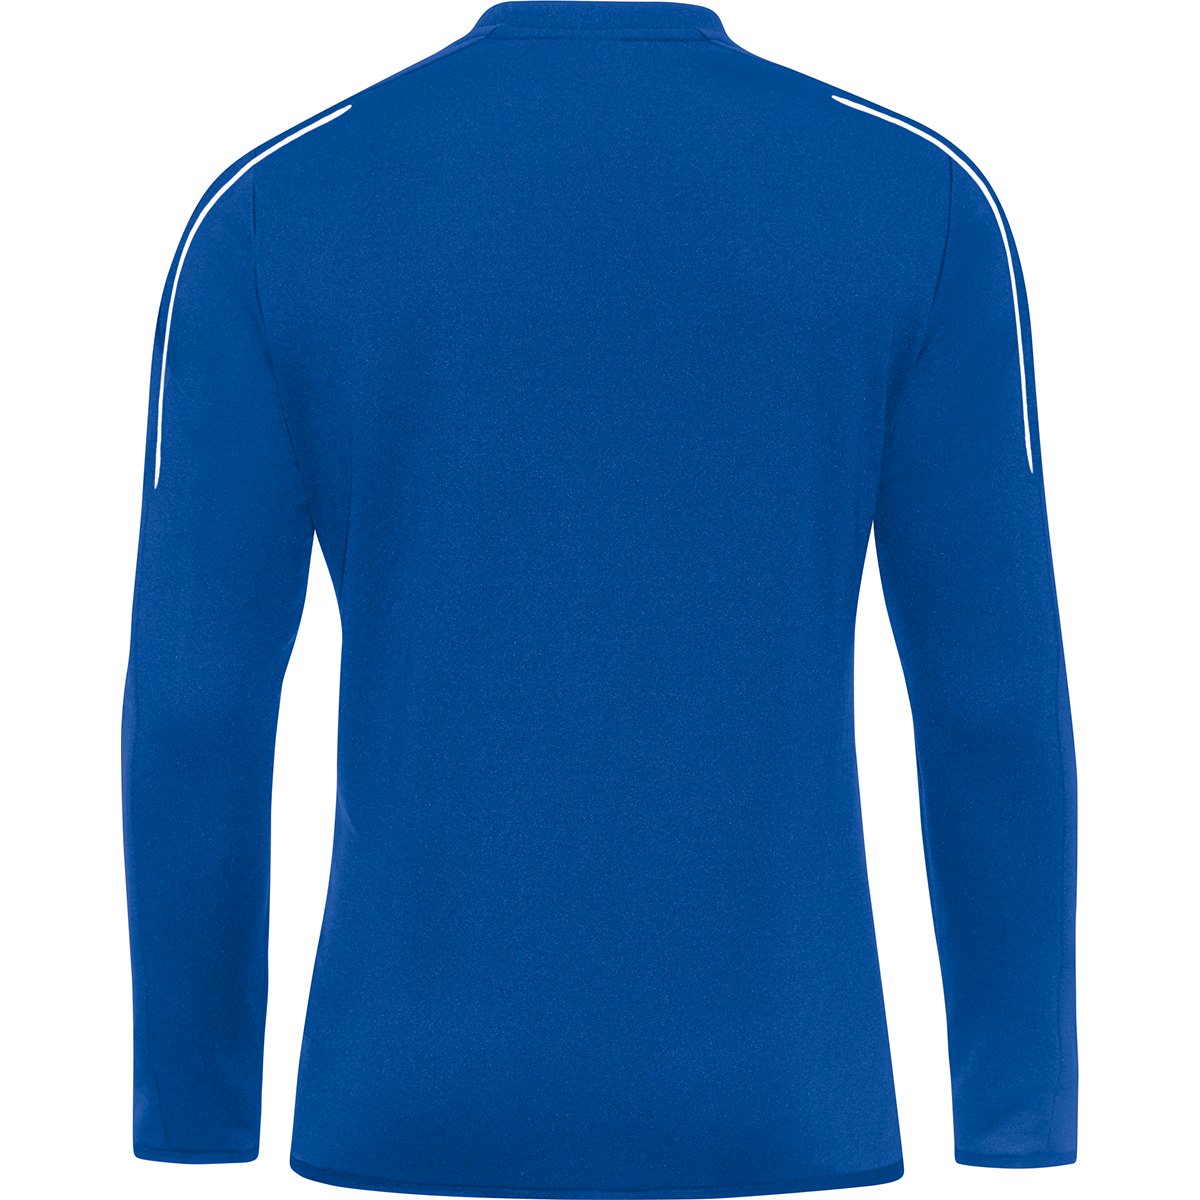 JAKO Herren Sweat Classico Sport Sweatshirt Pullover Pulli blau Gr S M L XL XXL 